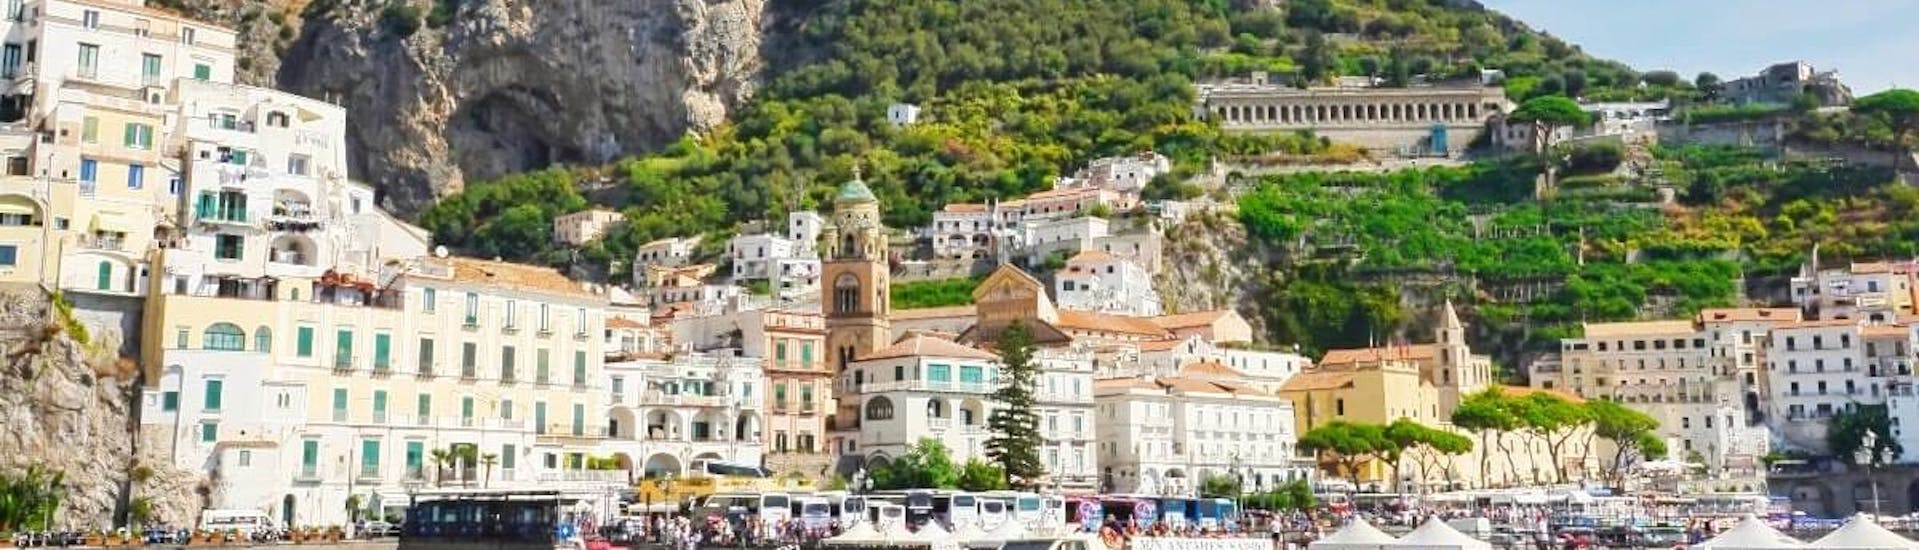 Blick auf Amalfi, das während der Bootstour von Pozzuoli nach Capri und Amalfi mit Mittagessen besichtigt werden kann, die von Gestour Pozzuoli organisiert wird.